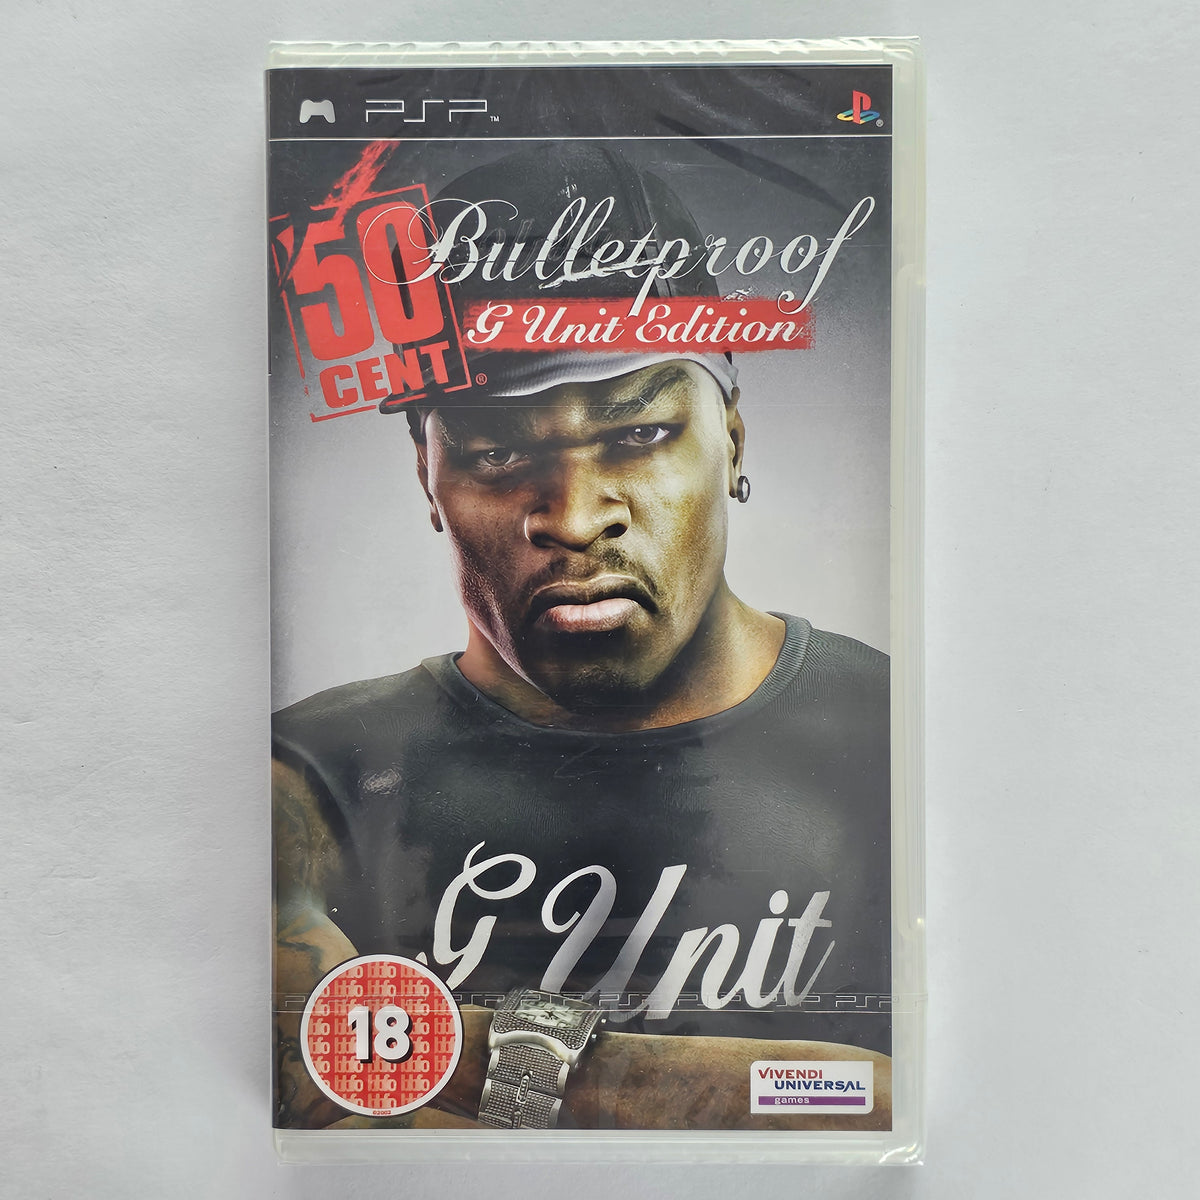 50 Cent kugelsicher G Unit Edit. [PSP]